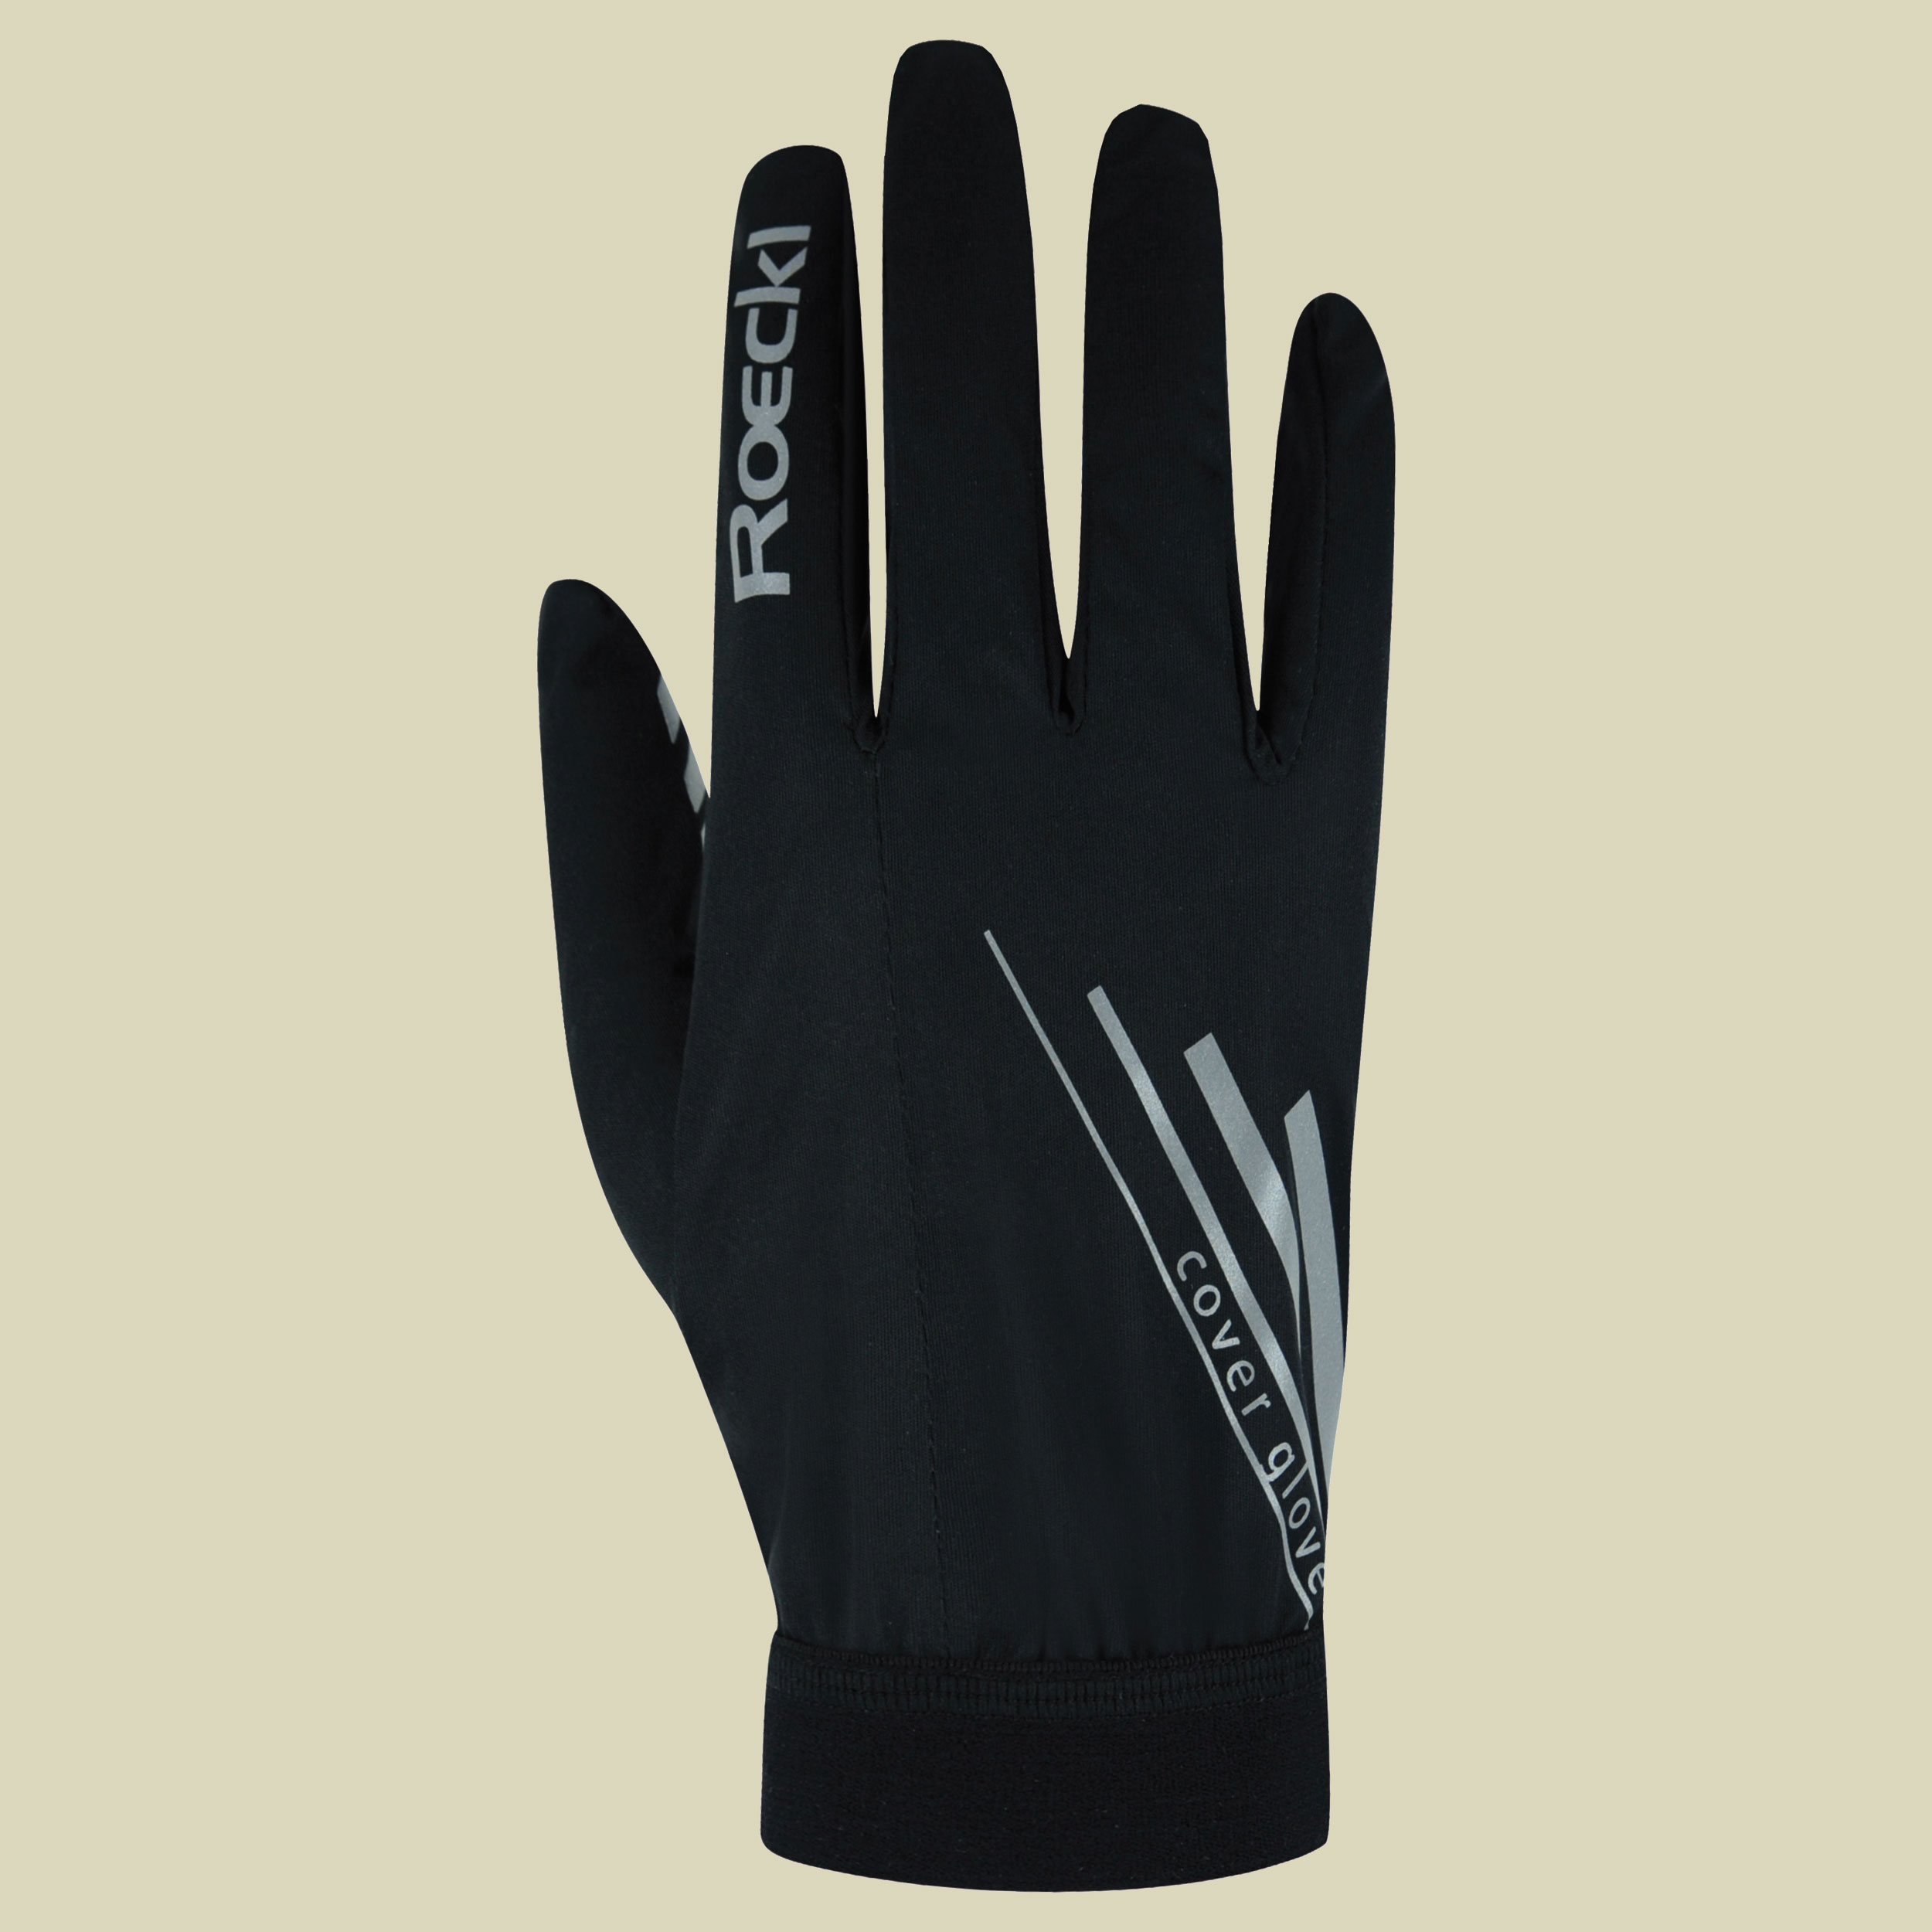 Monte Cover Glove Größe 7,5 Farbe schwarz